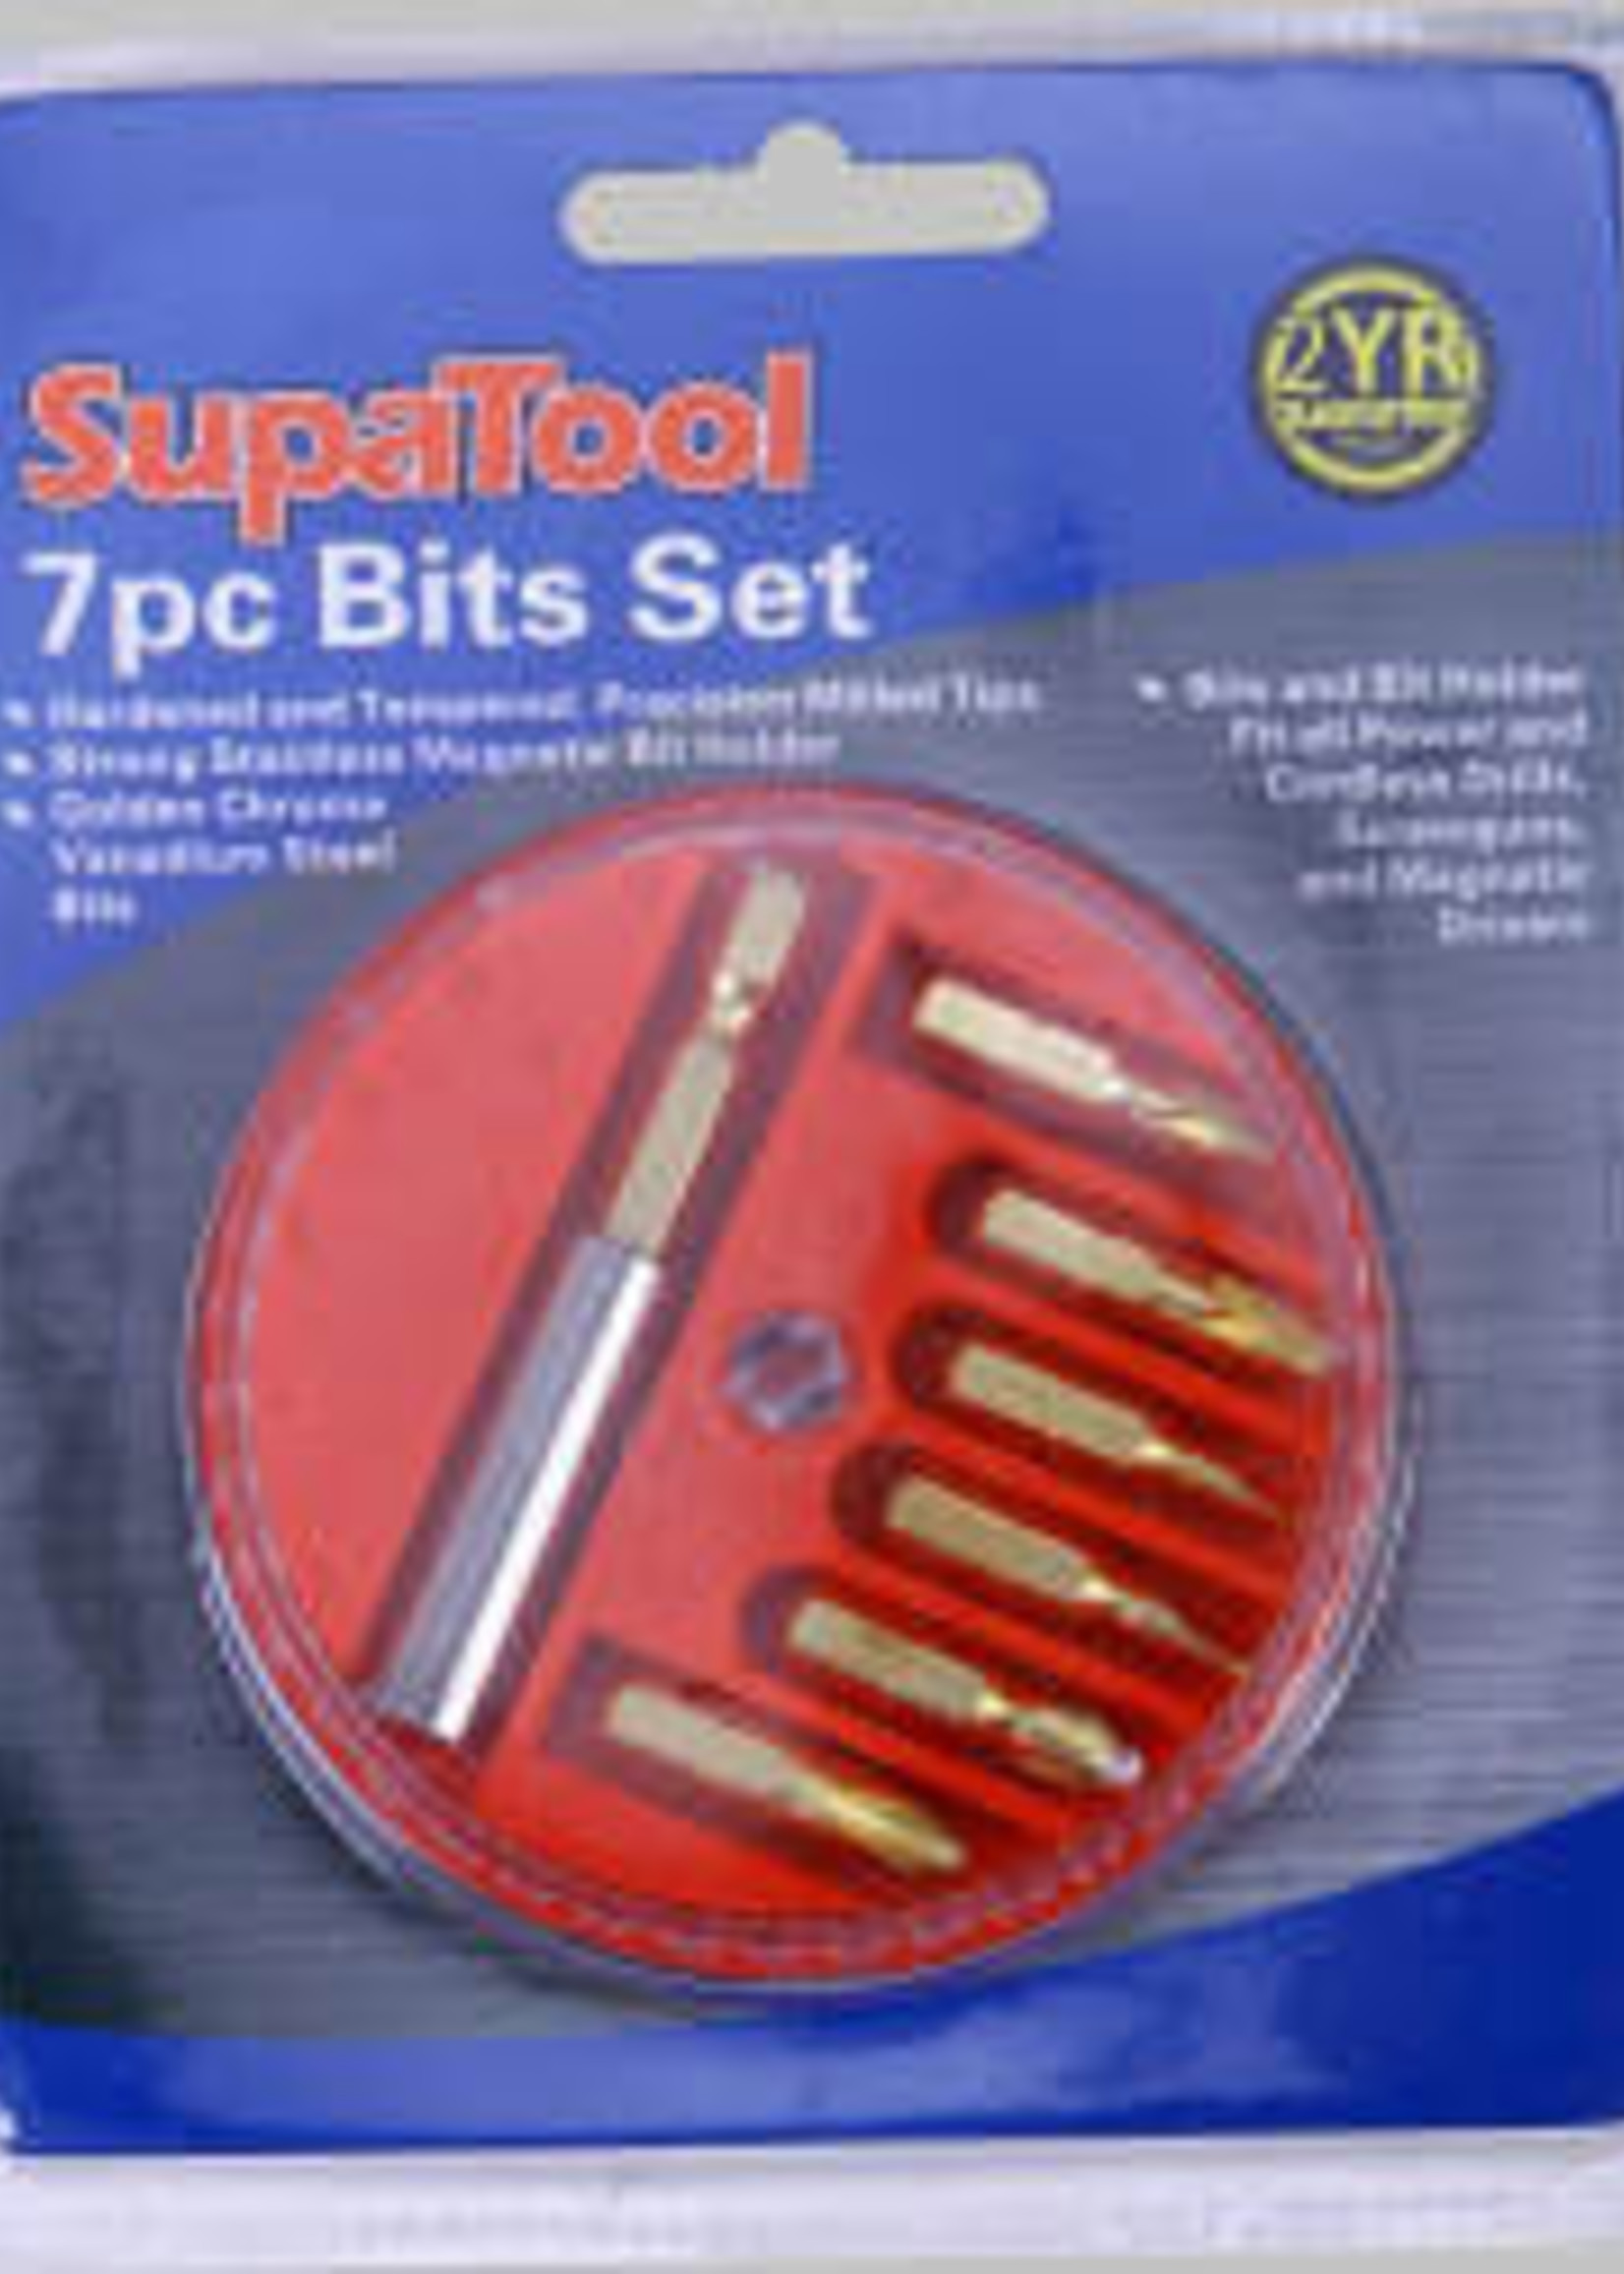 SupaTool SupaTool Power Bits Set 7 Piece